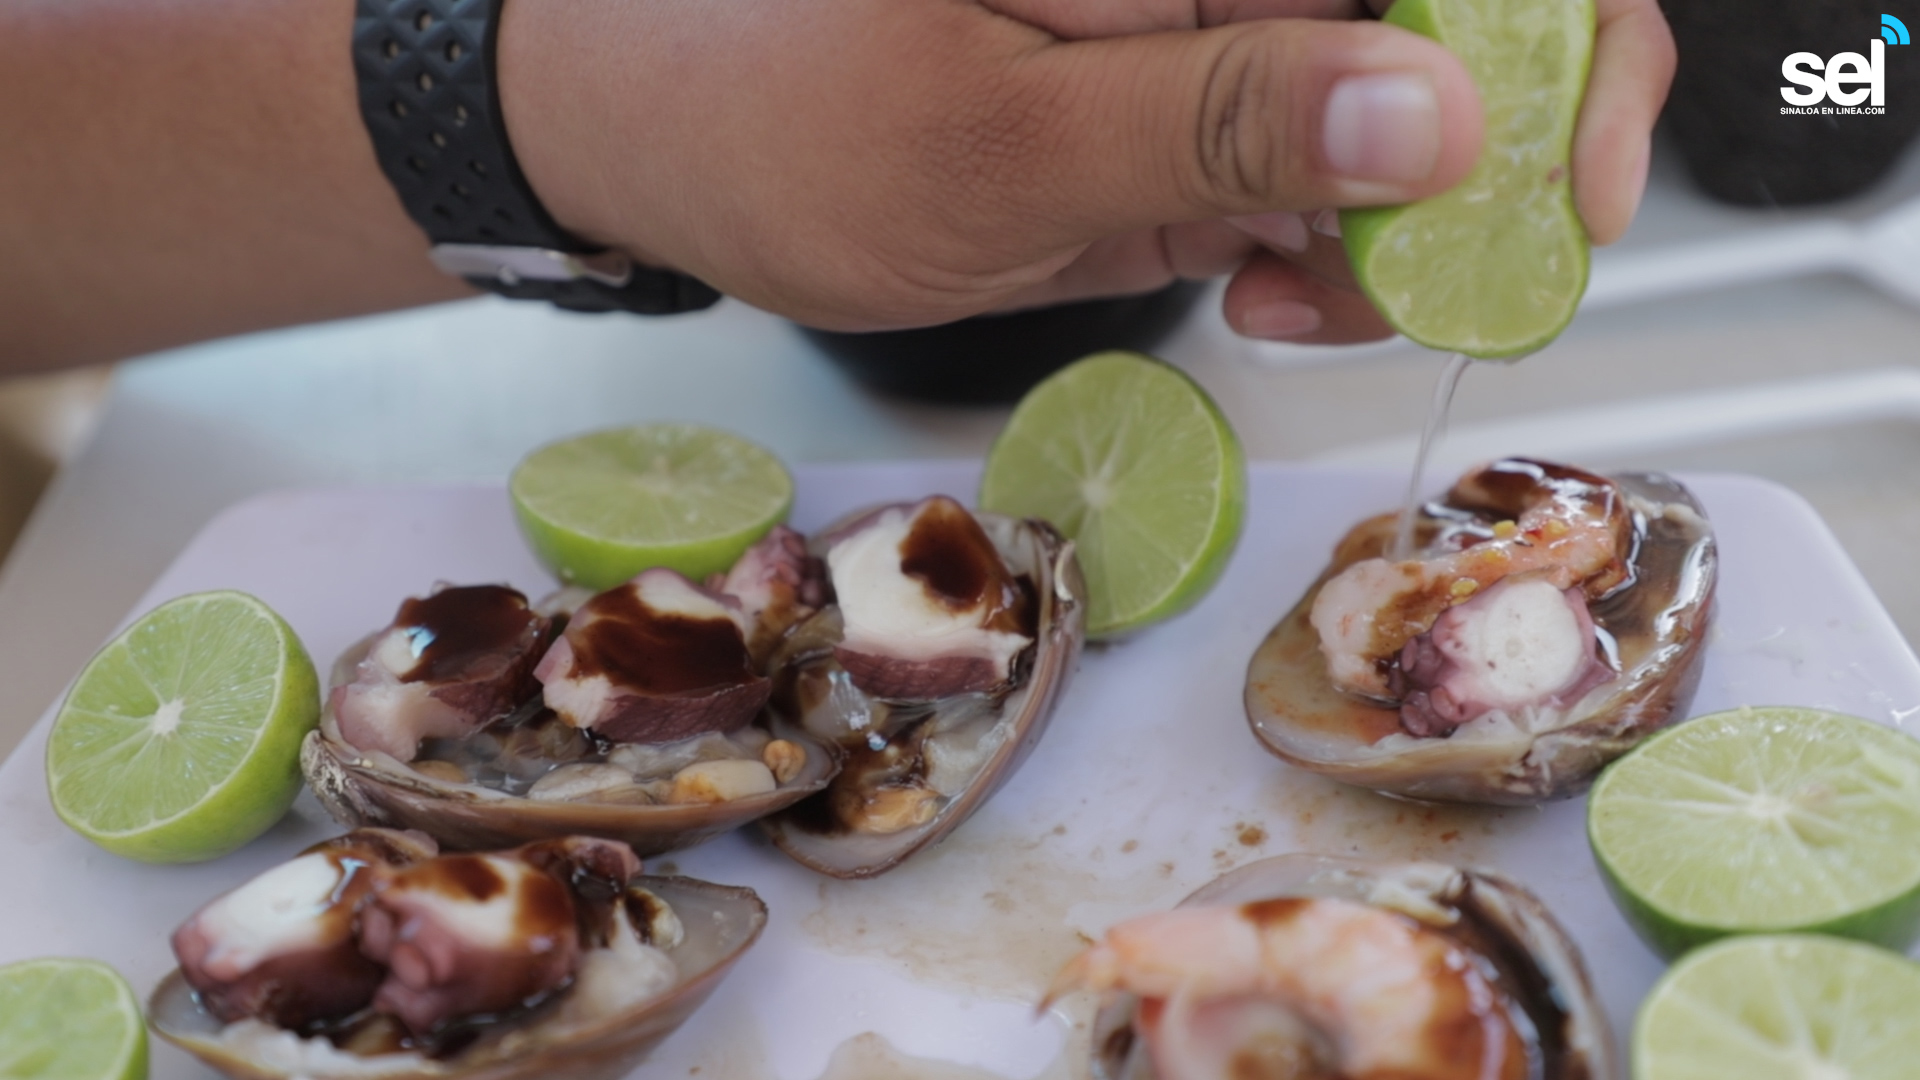 Mariscos Perla del Mar y “sus almejas chocolatas” | Sinaloa en Linea